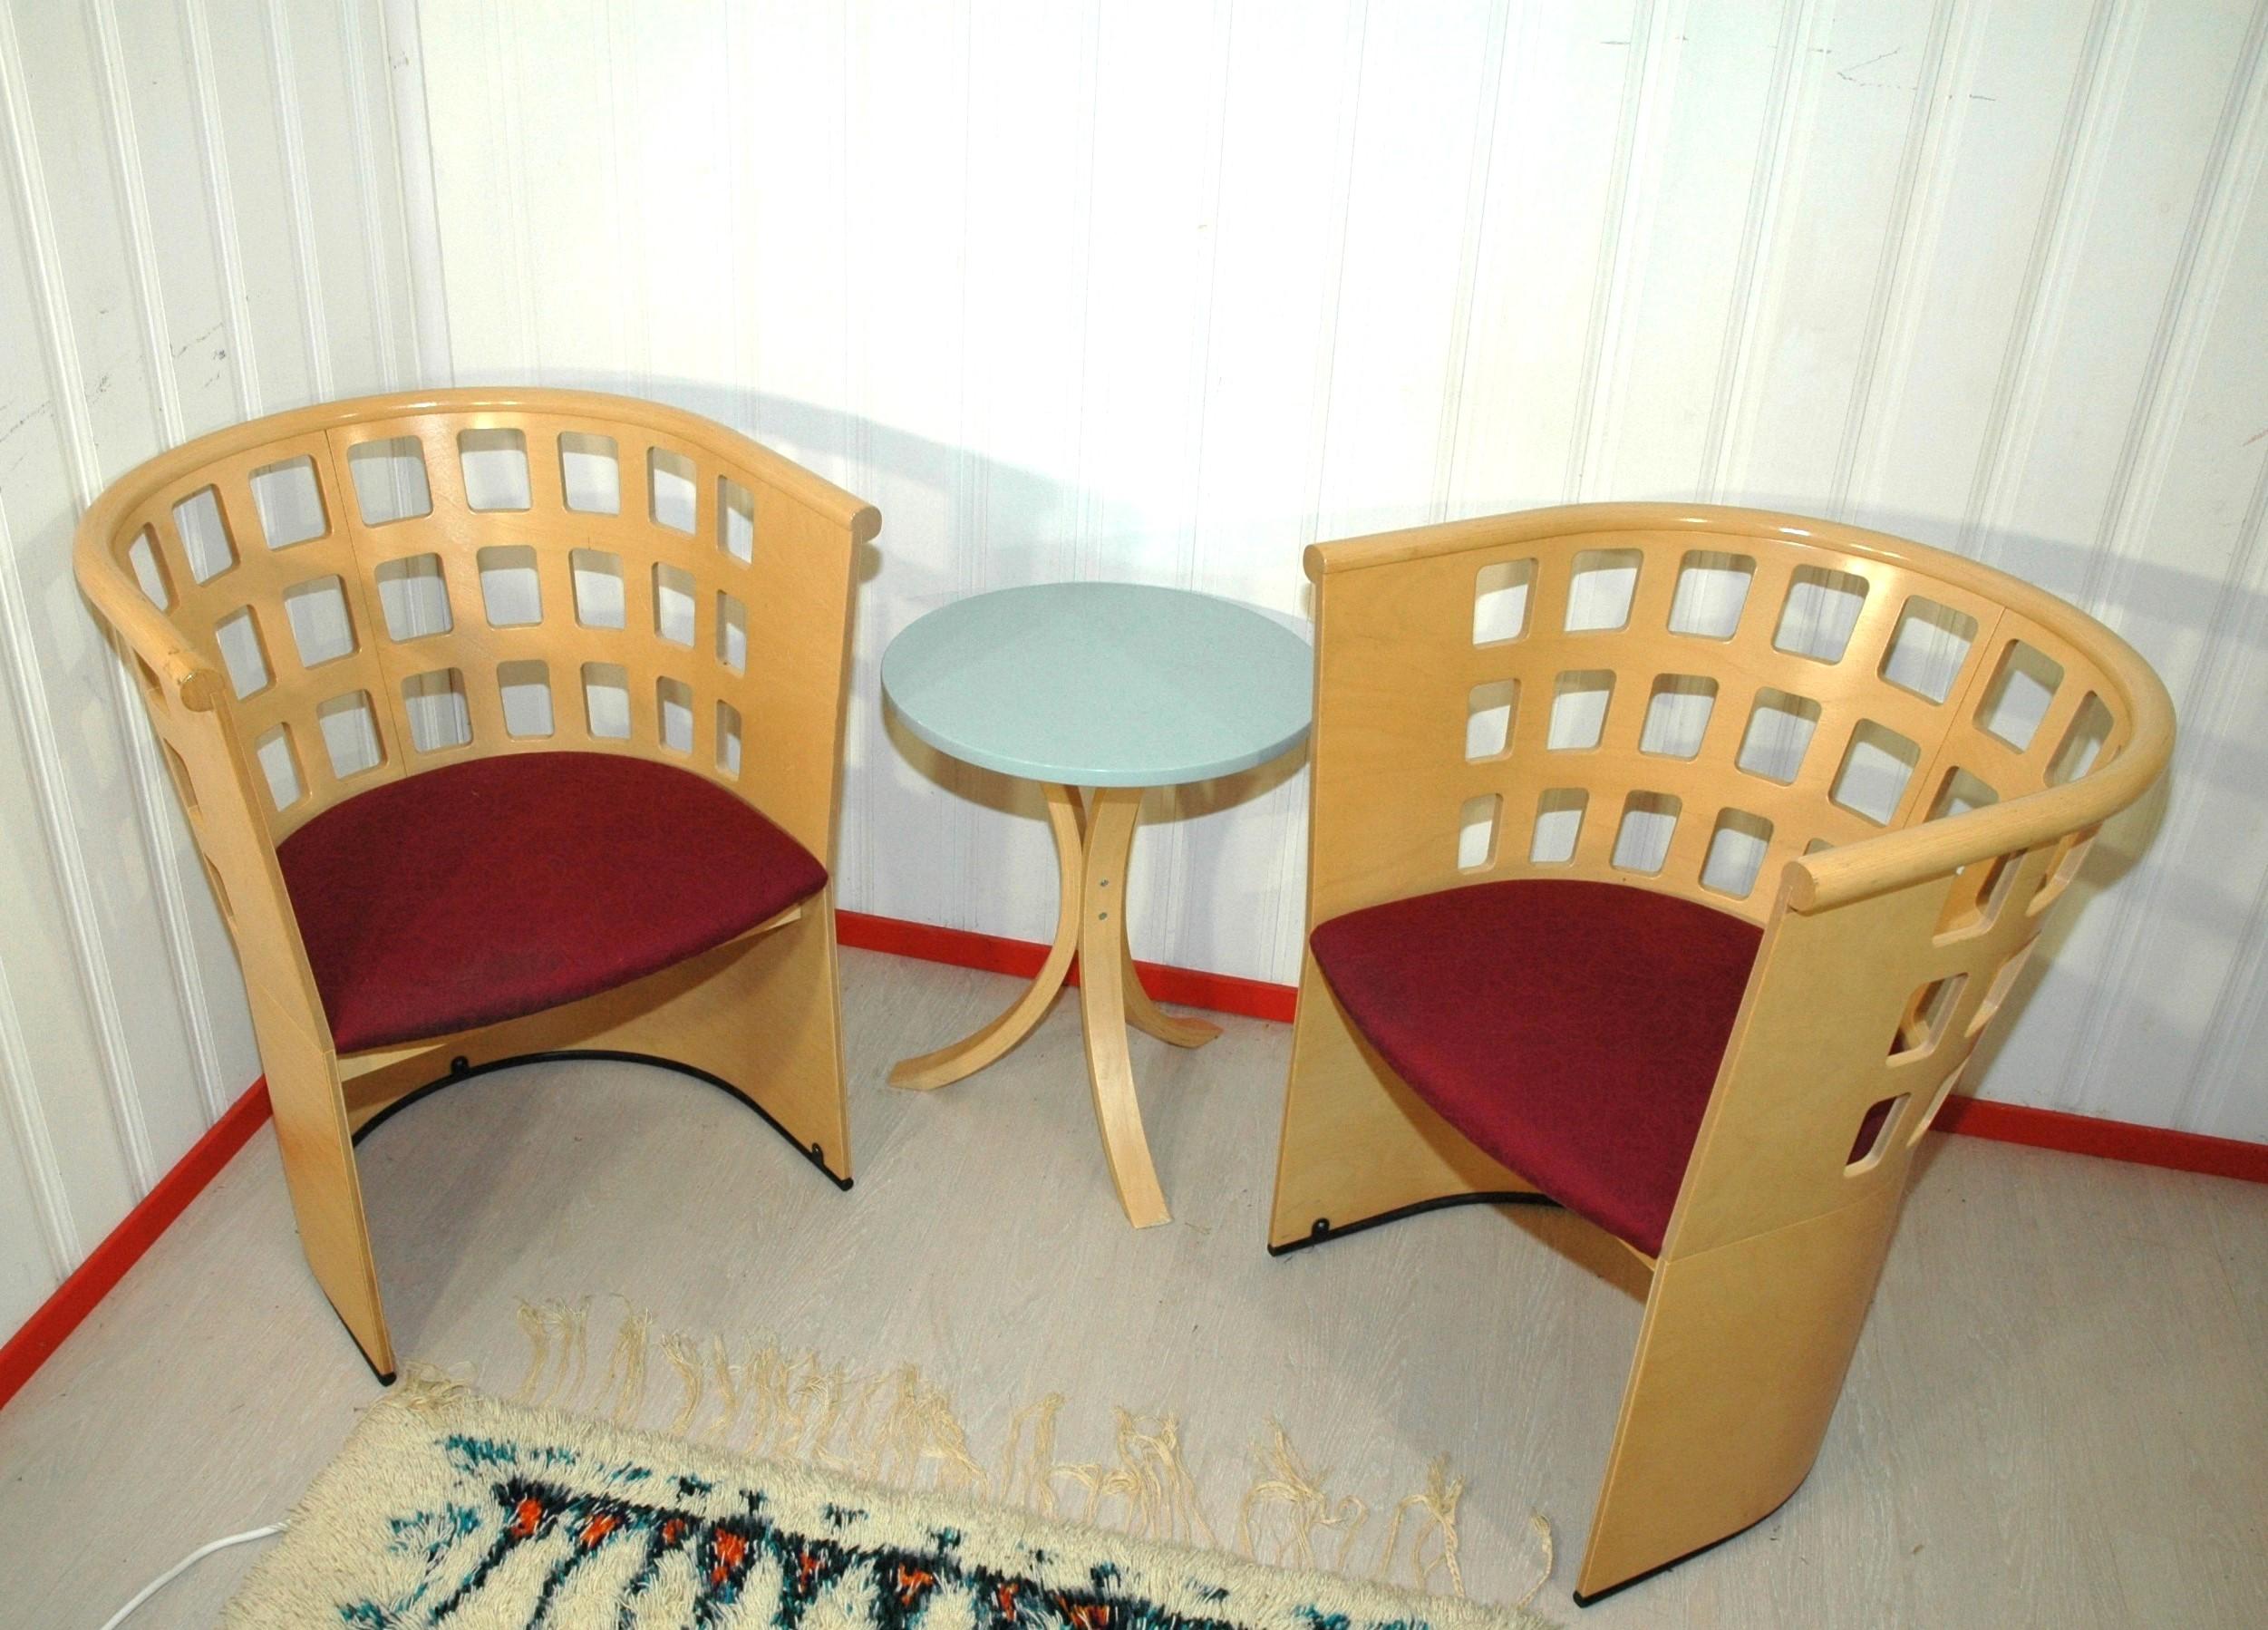 Eero Aarnio ist einer der großen finnischen Designer mit mehreren internationalen Auszeichnungen und bekannten Möbeln wie dem Ball Chair.
Er arbeitete unter anderem mit der finnischen Möbelfirma ASKO zusammen, wo er die Serie Ruutu (Quadrat)